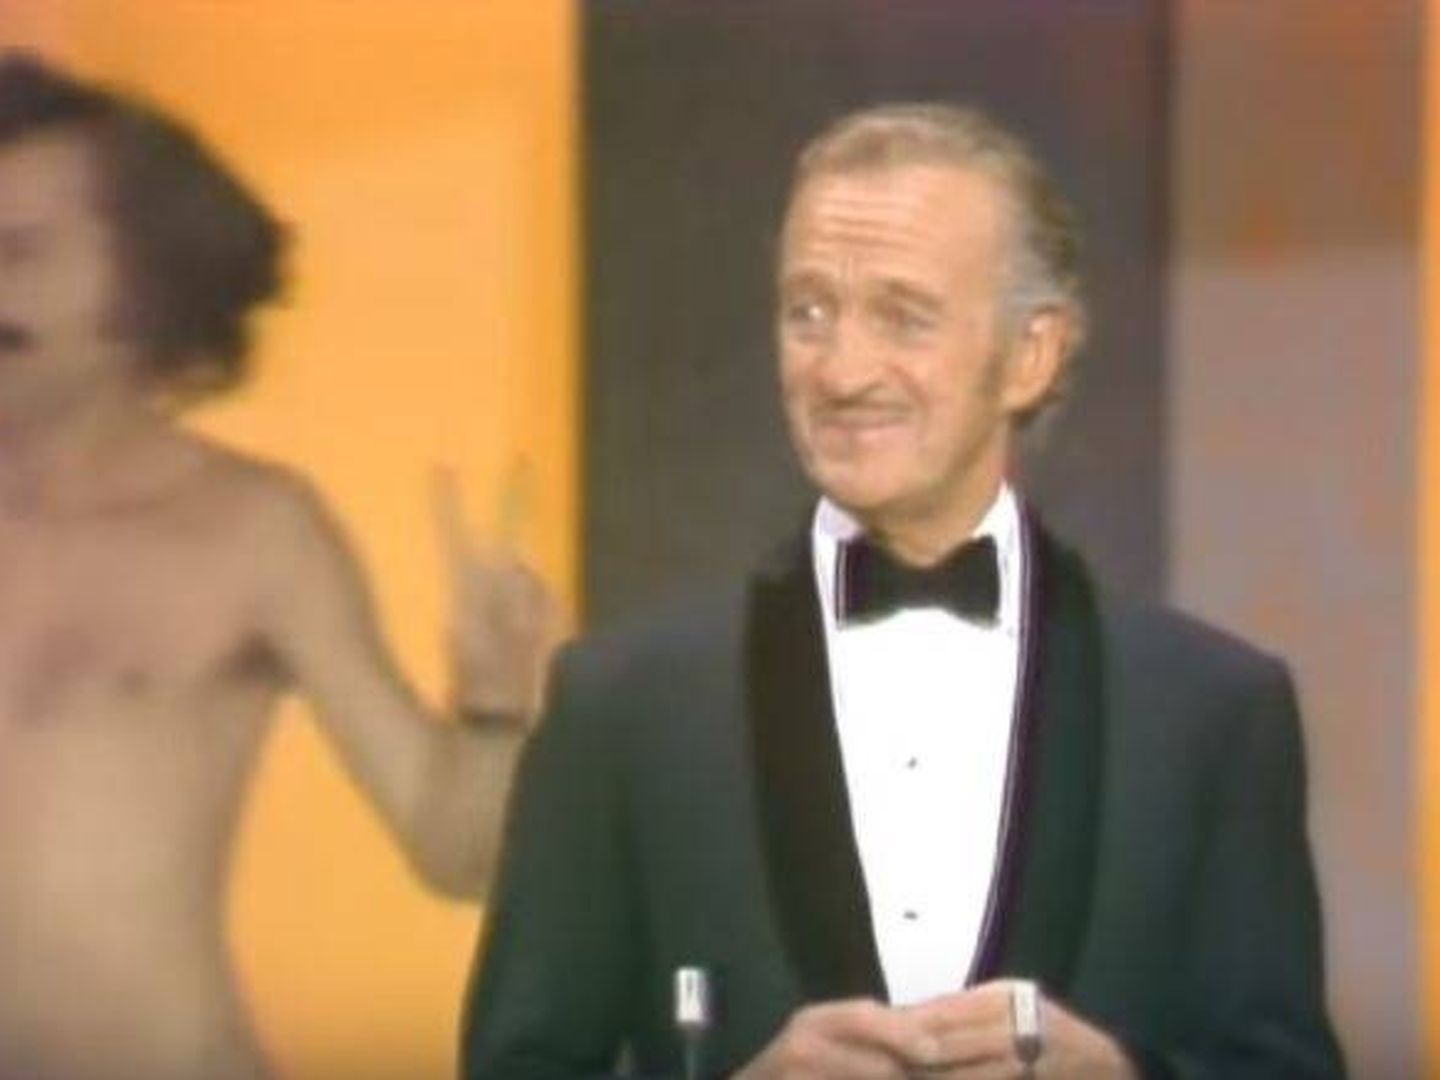 El momento en el que un espontáneo apareció desnudo tras David Niven mientras presentaba los Oscar